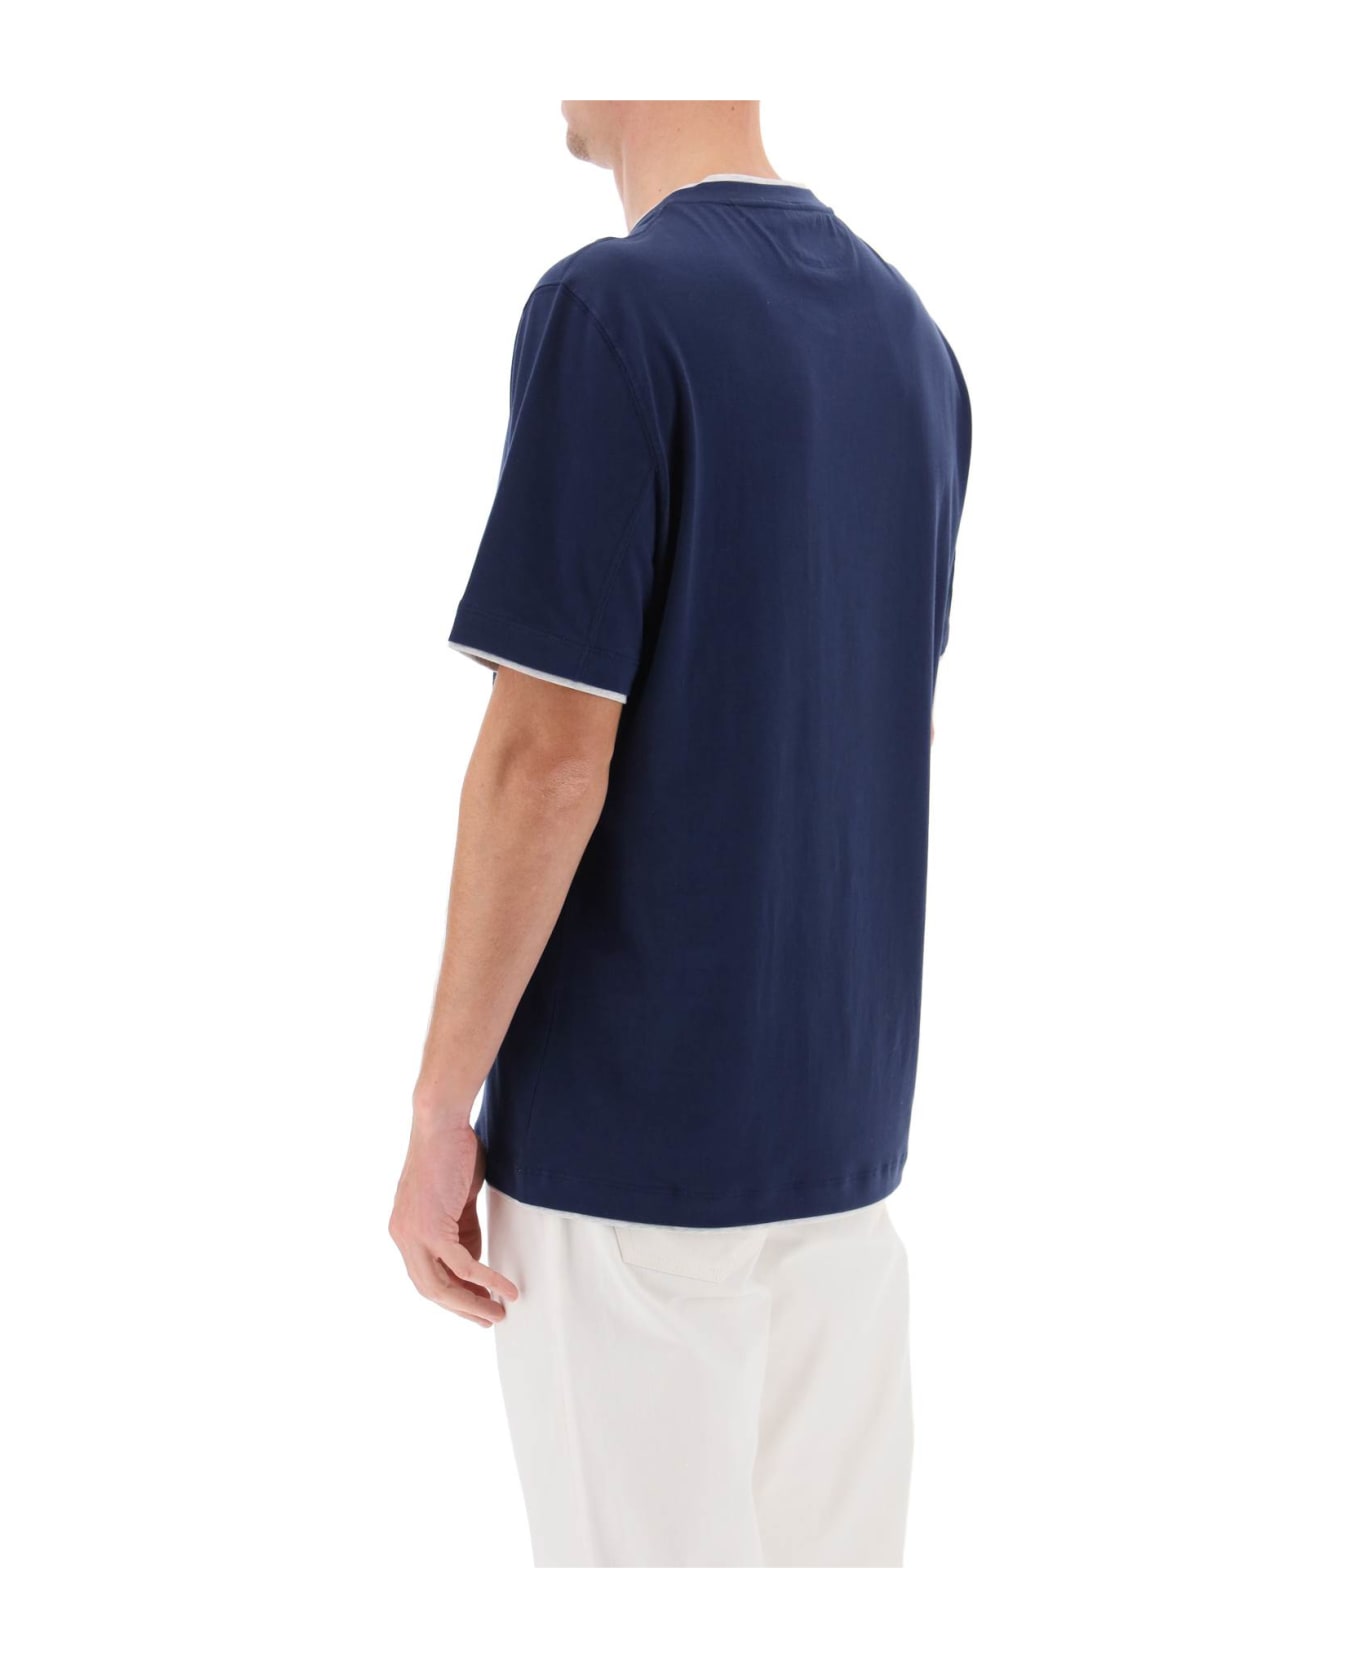 Brunello Cucinelli Layered-effect Crewneck T-shirt - Blu Prussia+grigio Chiaro